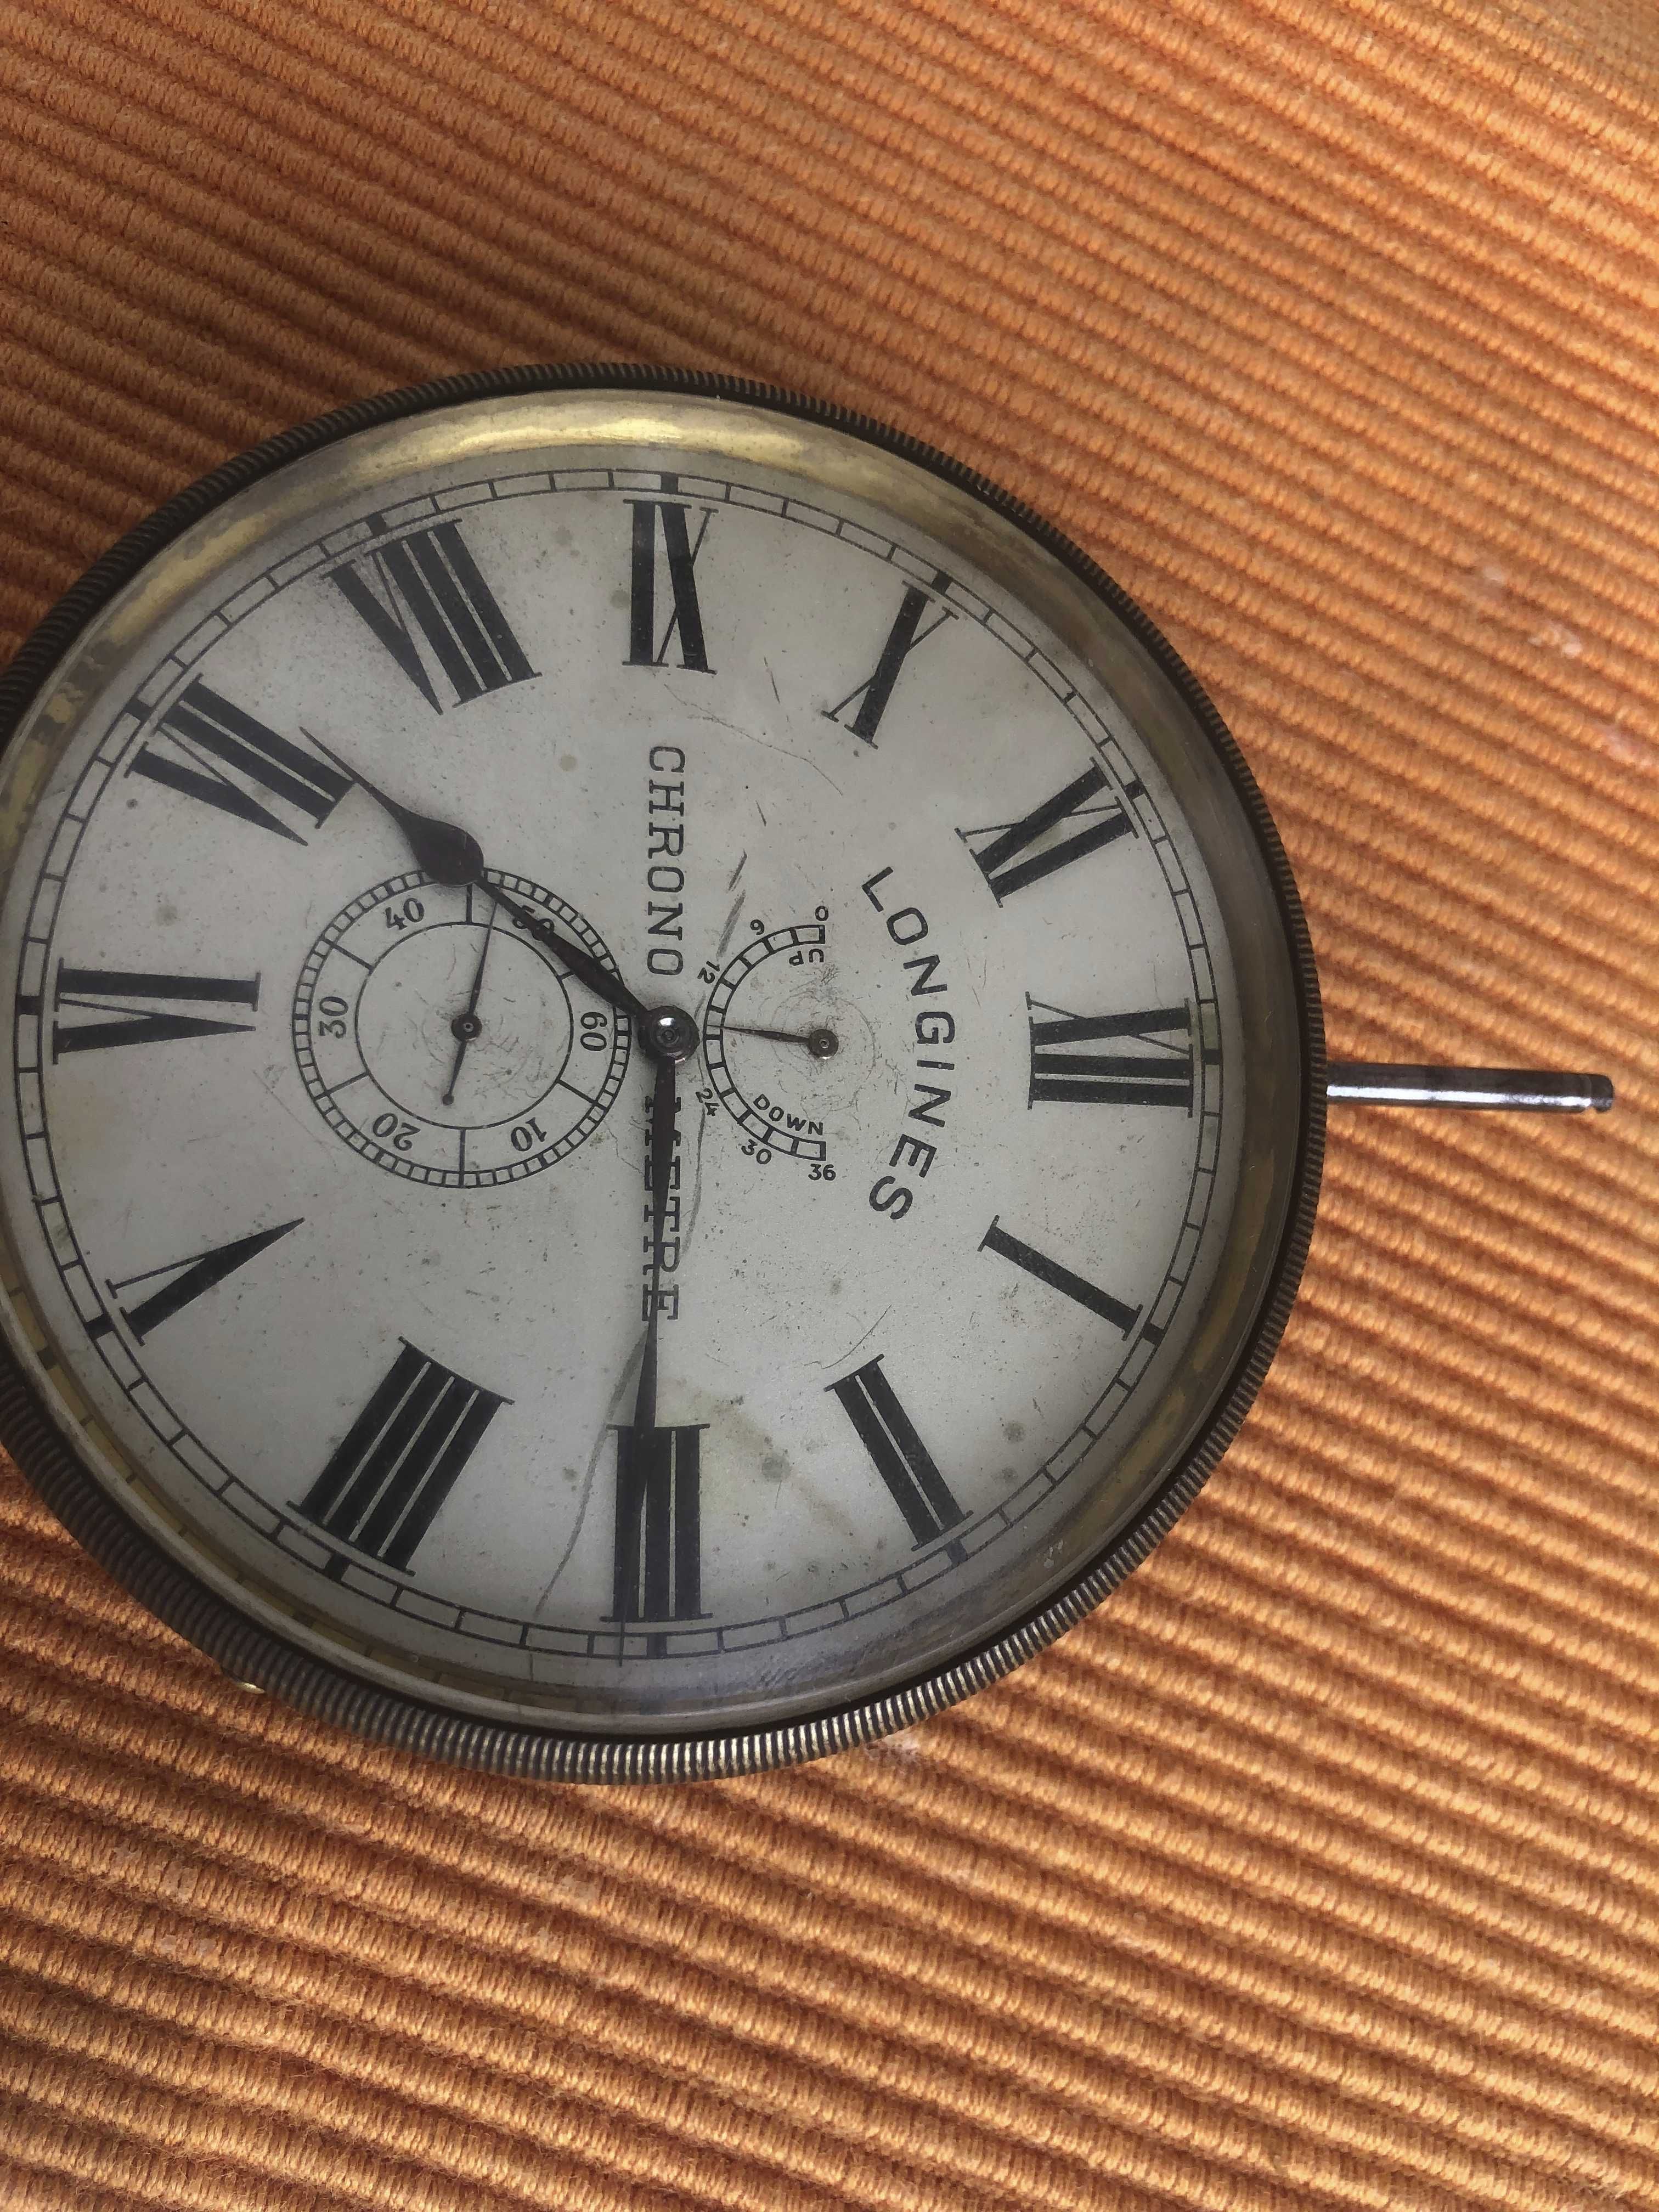 Relógio longines raro de bolso/expositor de relojoaria. Calibre 2129.